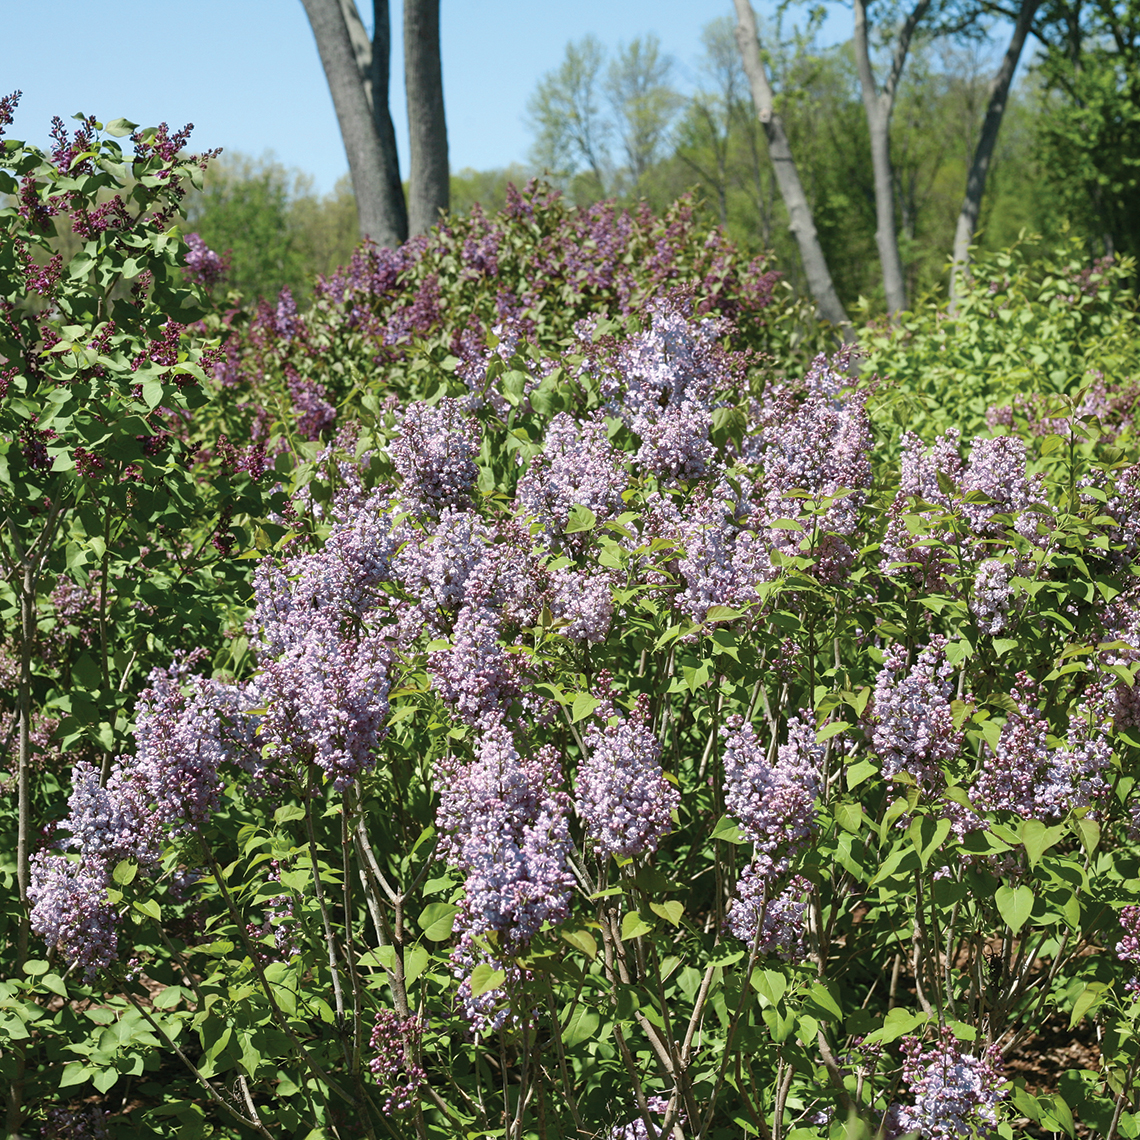 Scentara Double Blue lilac shrub in the landscape